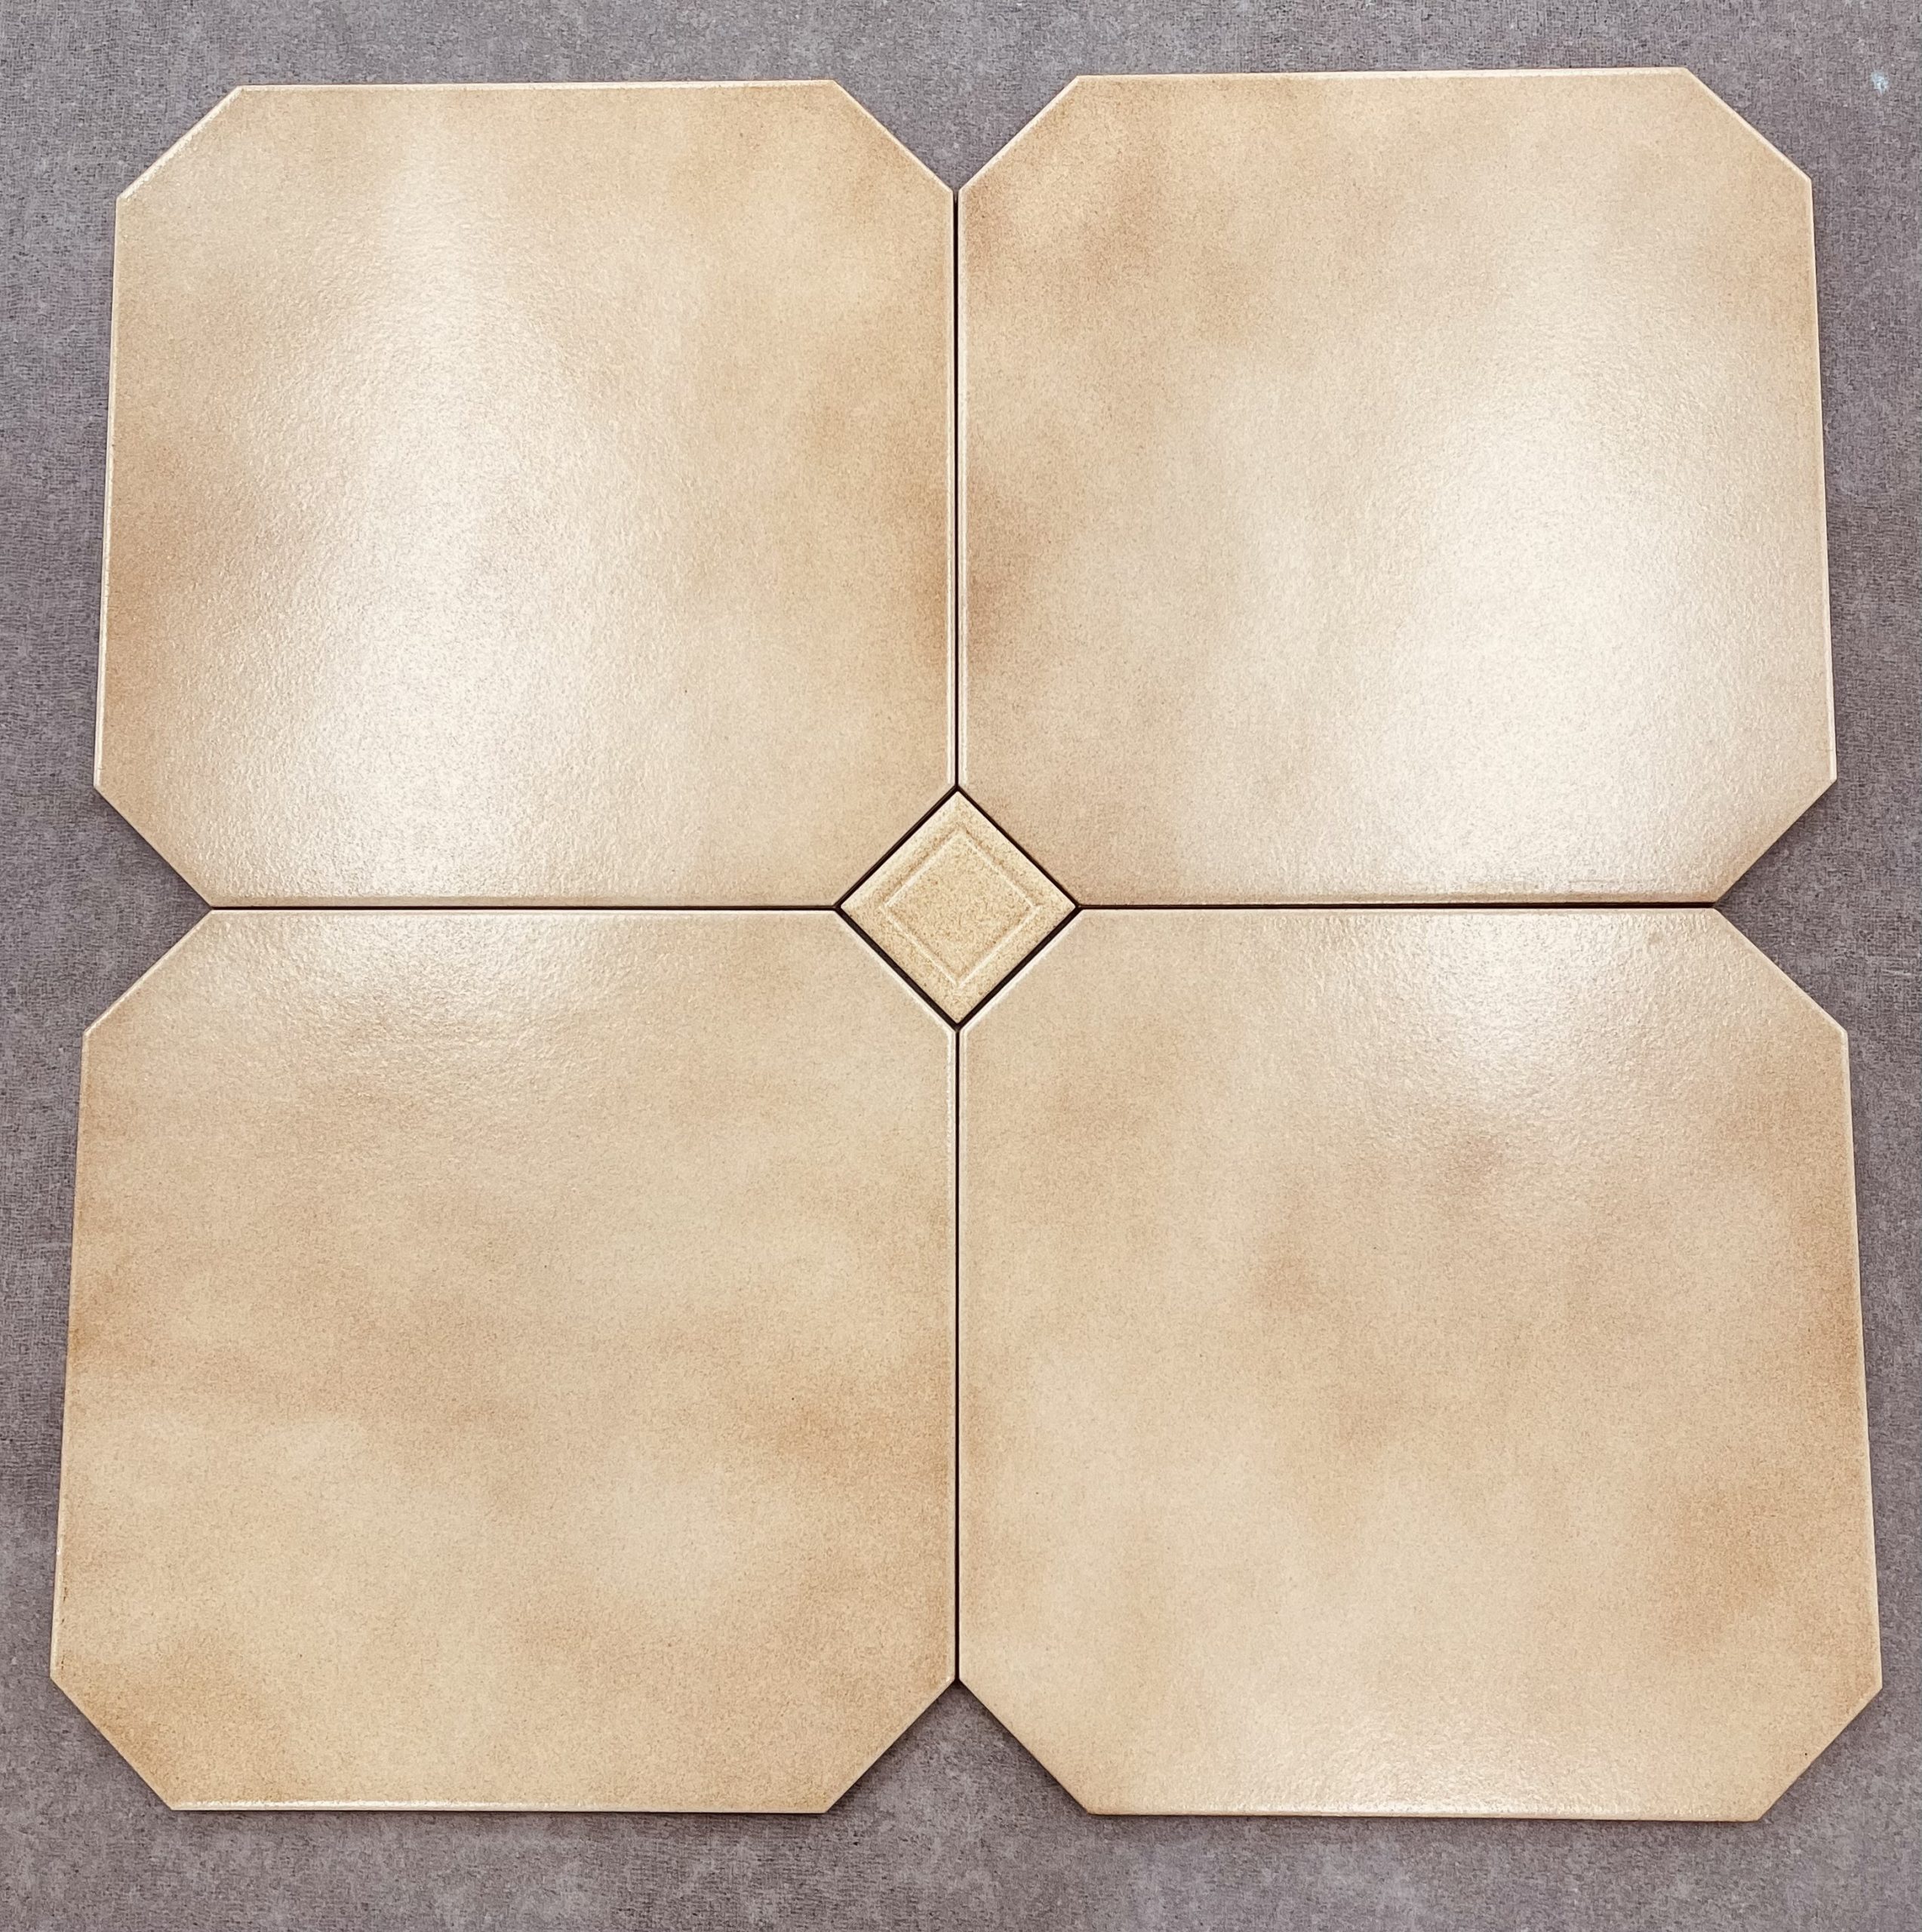 Tuscany Matt Finish Non Rectified Italian Floor Octagon Tile with Dot 4554